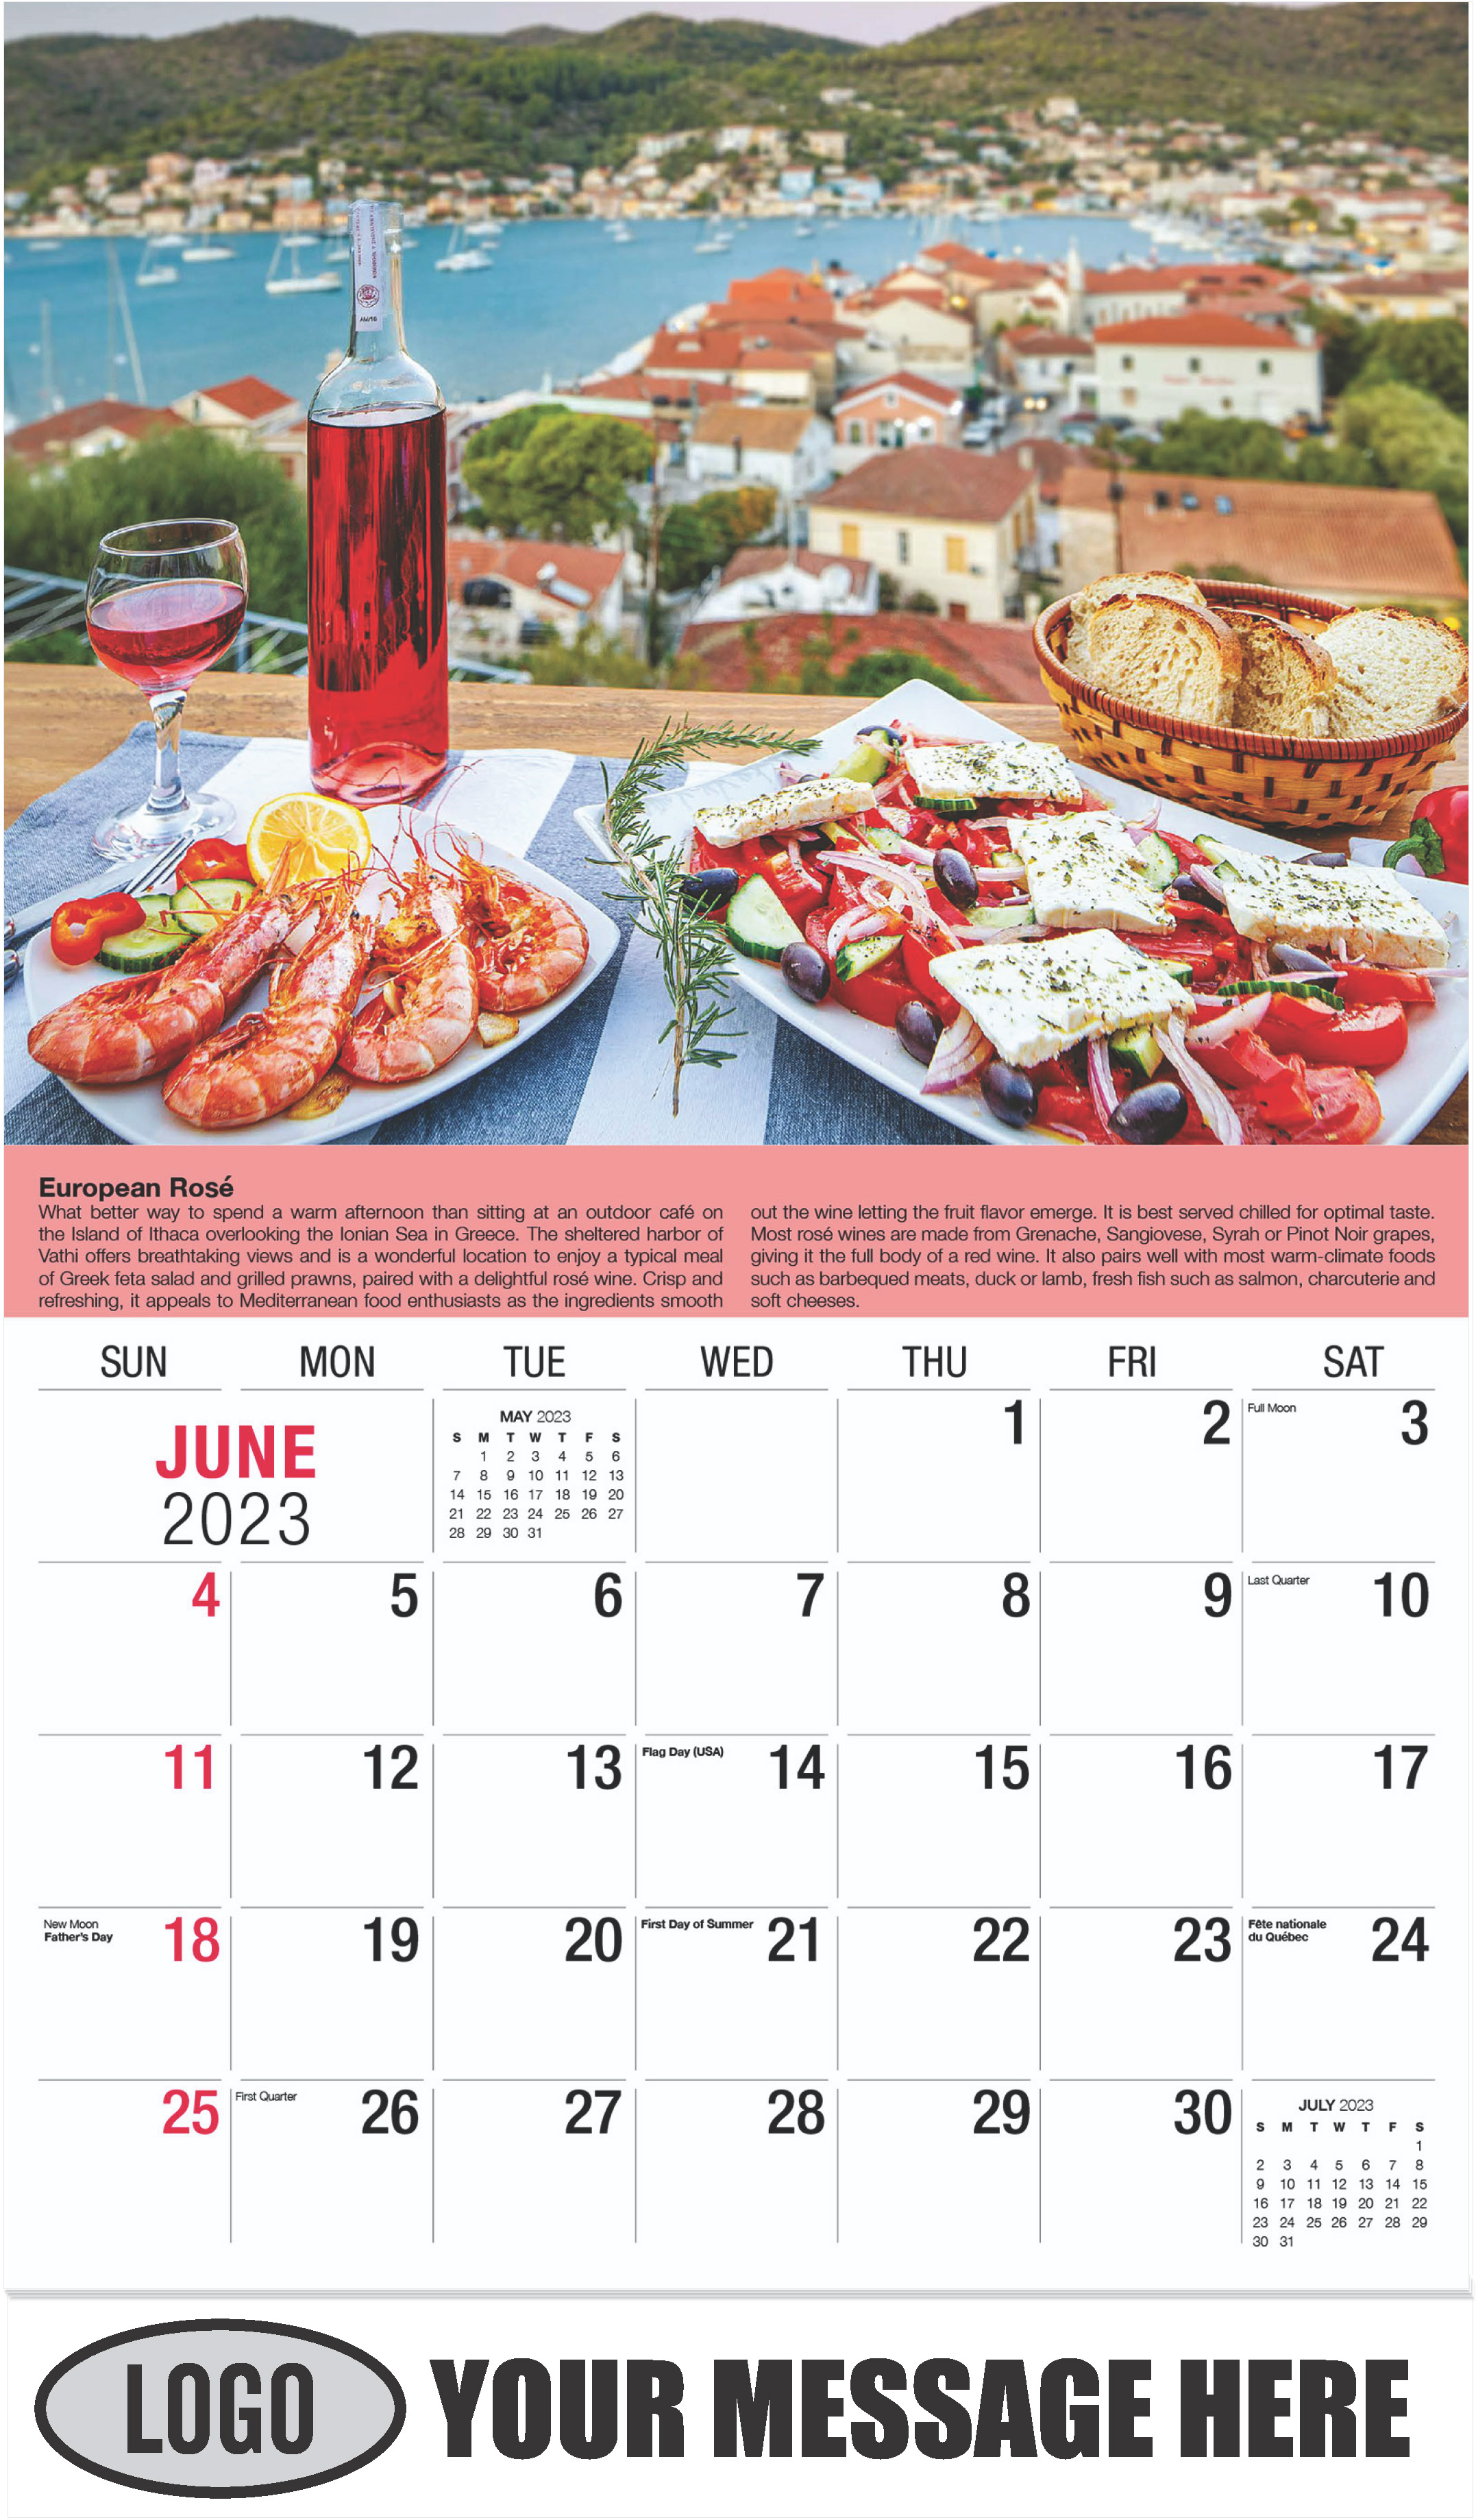 Wine Tips Calendar - June - Vintages 2023 Promotional Calendar